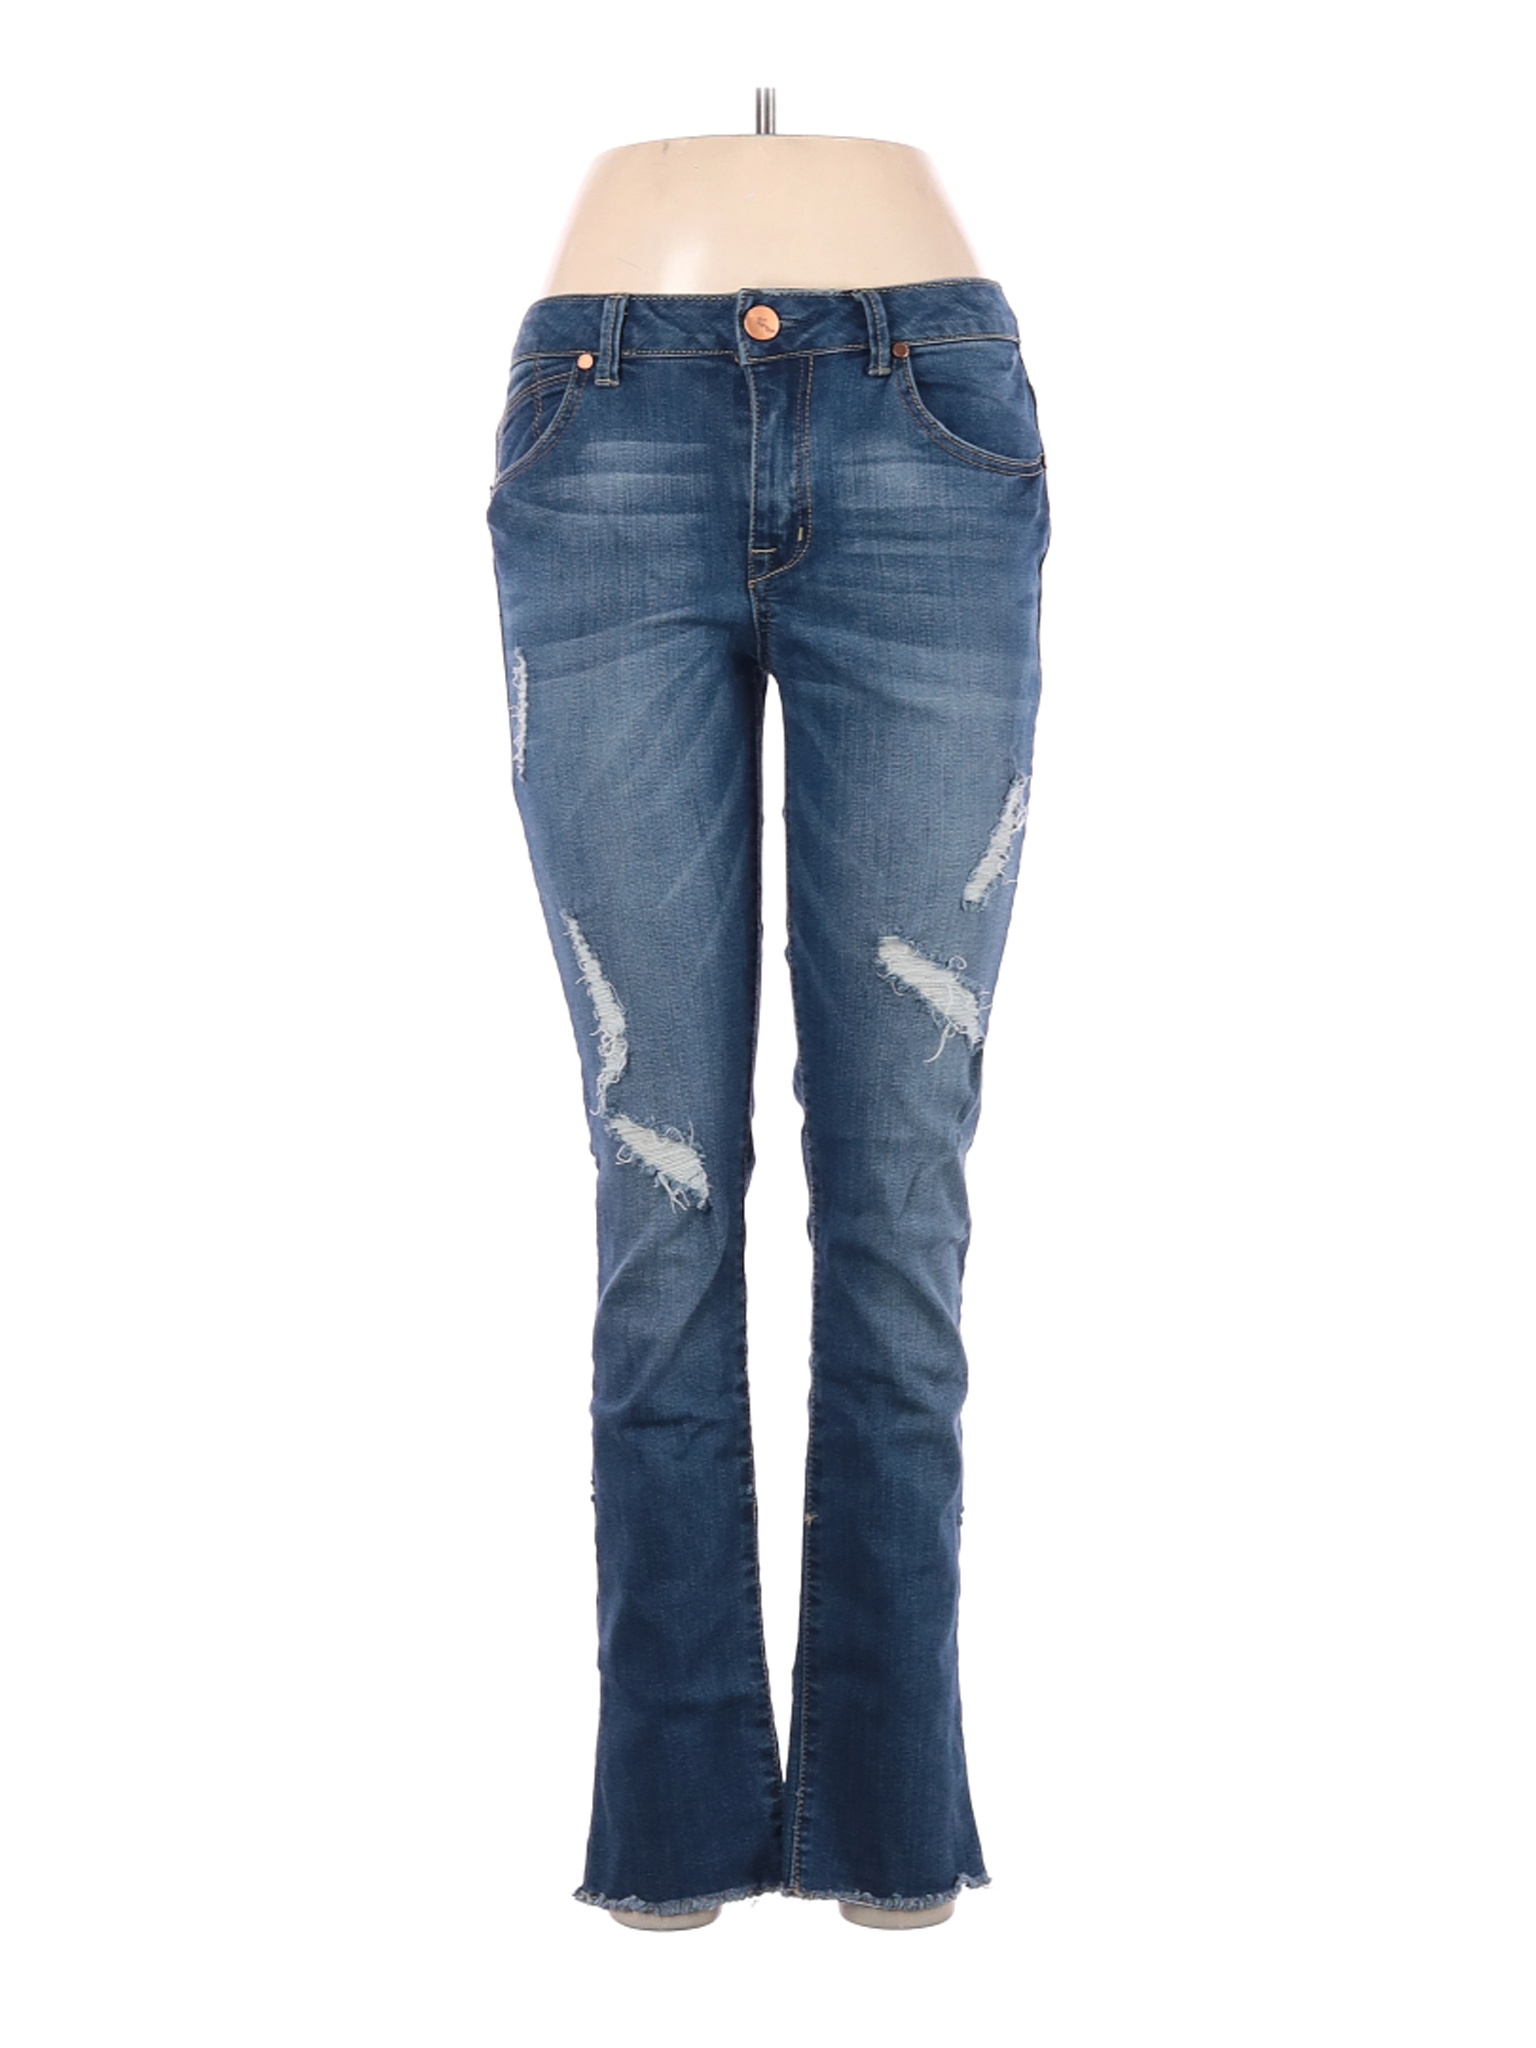 1822 Denim Women Blue Jeans 6 | eBay